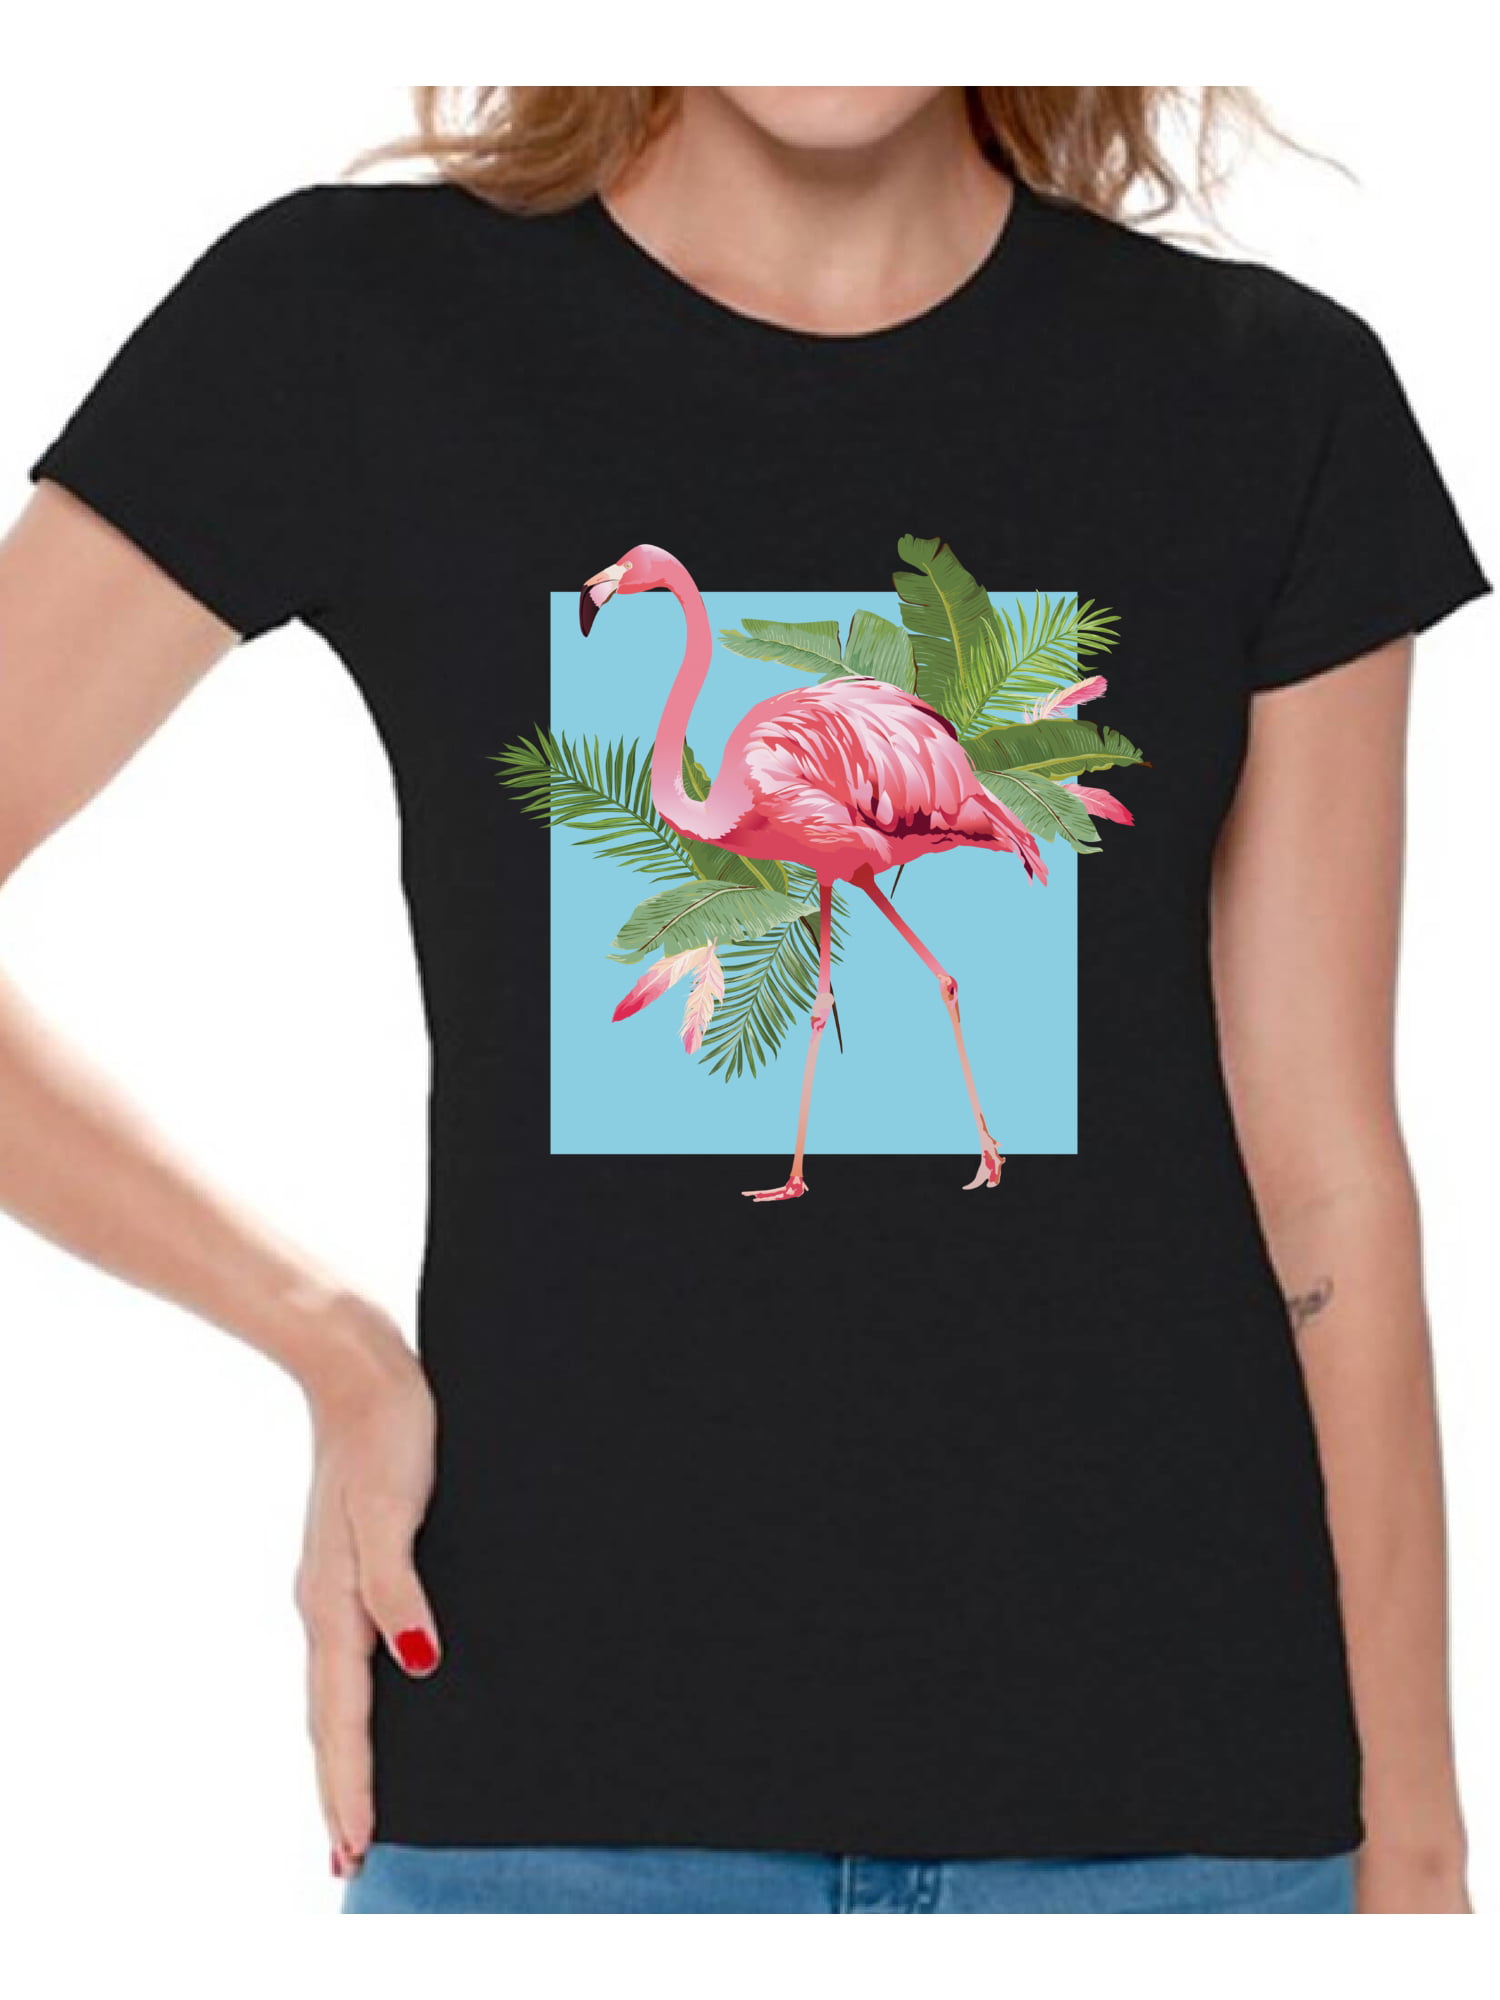 Cute Summer shirt tee oversized shirt popular right now Summer Time Flamingo t-shirt Summer shirts for Women Vacation Mode shirt